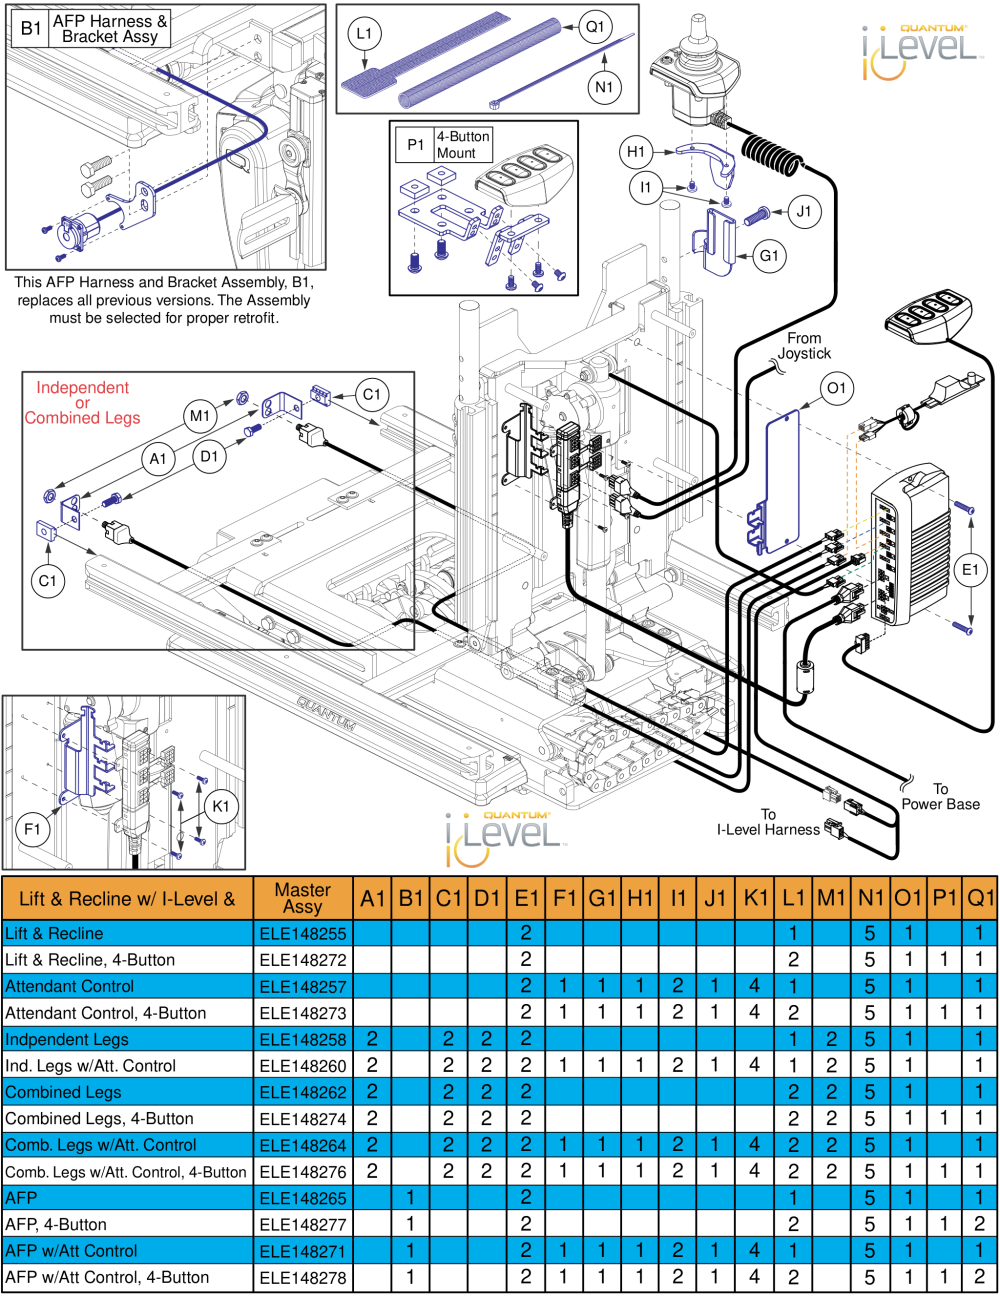 Lift & Recline Hardware, Q-logic 2 - Reac Lift / I-level parts diagram